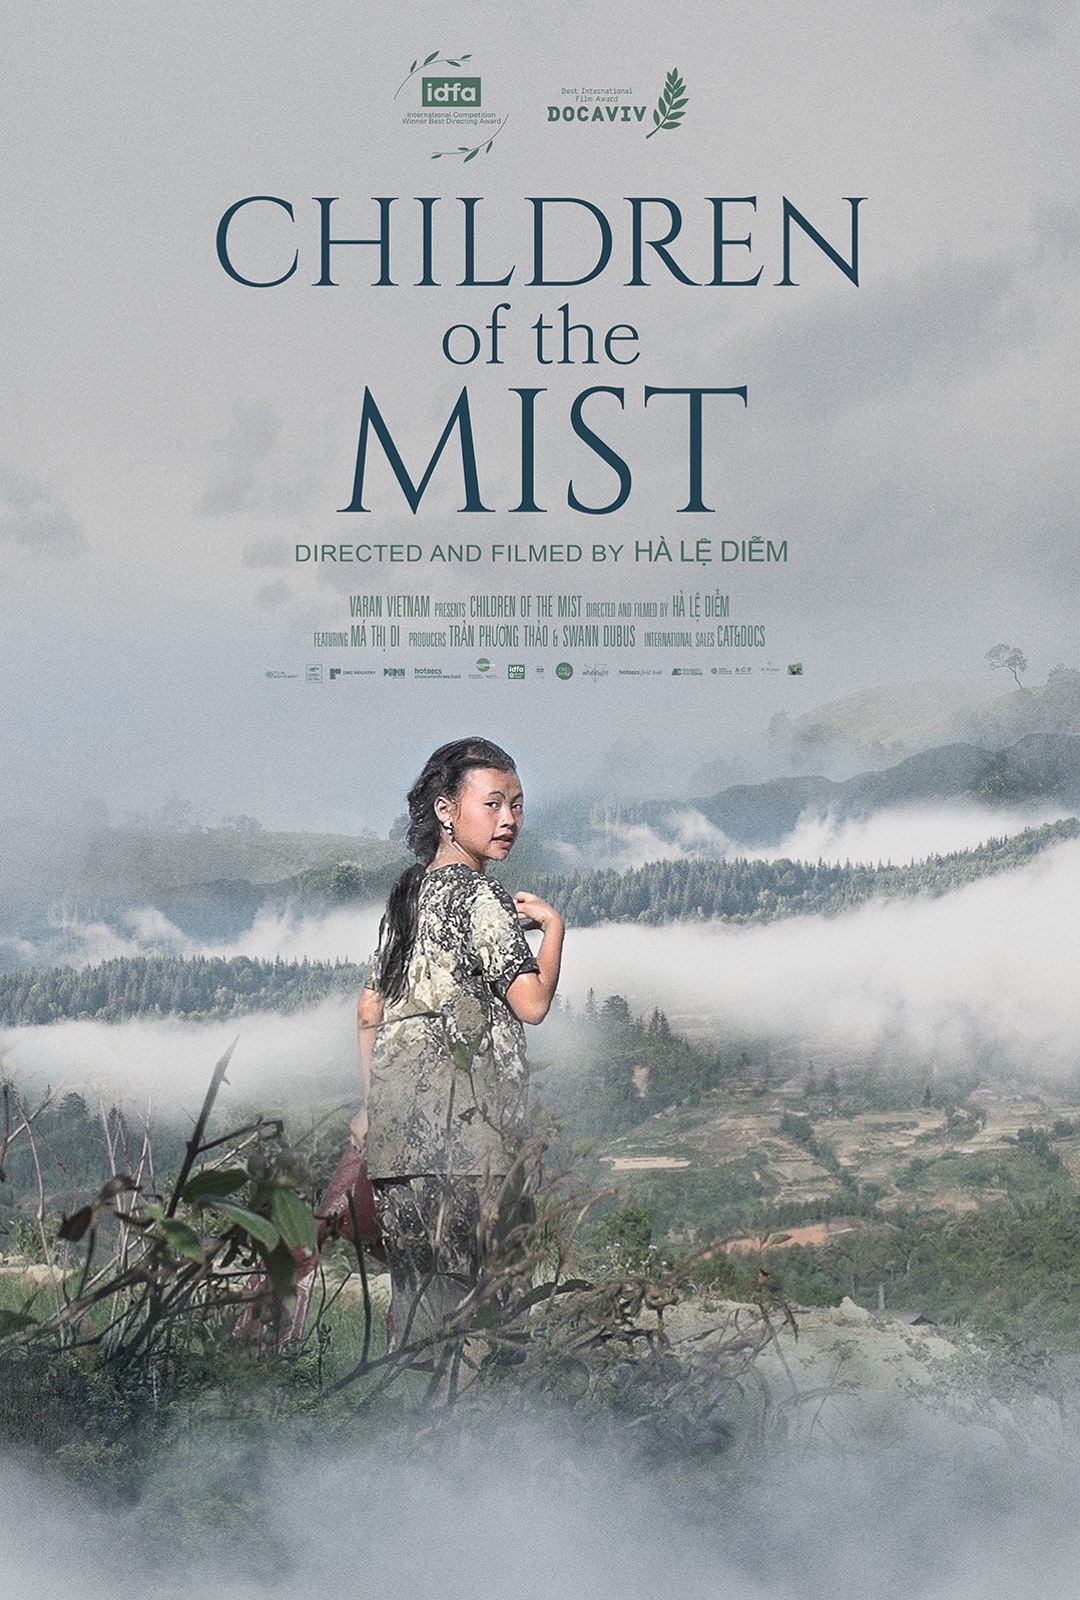 Hà Lệ Diễm Đạo diễn Phim Việt vào top 15 ở Oscar: Nhà làm phim như người thợ gốm - Ảnh 1. Hình ảnh trong phim Children of the Mist (Những đứa trẻ trong sương) của Hà Lệ Diễm - Ảnh: VARAN    Tuổi Trẻ đối thoại với Hà Lệ Diễm, nữ đạo diễn 31 tuổi với niềm say mê dòng phim tài liệu trực tiếp, dấn thân và giàu cảm xúc.  Những đứa trẻ trong sương là phim tài liệu theo chân Di, cô bé người Mông ở Sa Pa, từ khi hơn 12 tuổi đến hơn 15 tuổi. Các cô bé người Mông thường kết hôn sớm, nhưng Di mong muốn được đi học.  Hà Lệ Diễm: Sương mù đẹp và cũng rất đáng sợ * Tên phim Children of the Mist (Những đứa trẻ trong sương) rất giàu hình ảnh. Ngoài hình ảnh sương mù gắn với vùng đất Sa Pa, tên phim còn ý nghĩa gì?  - Tôi chọn tên Children of the Mist vì sương mù (mist) là một nhân vật của vùng đất đó, nó không bao giờ tan biến. Có những ngày sương mù rất đẹp nhưng cũng có những ngày nó rất đáng sợ.  Tôi nhớ khi còn đi học, nhà ở trên núi rất cao mà phải đi bộ, đường rất bé. Những ngày sương muối lạnh giá, sương mù xuống như một bức tường đặc quánh bao quanh và cao làm tôi tưởng không thể vượt qua được.   Tôi sợ đến mức quay về nhà, nói dối để không phải đi học nữa. Nhưng rồi tôi cũng phải lấy hết can đảm để băng qua bức tường sương mù ấy.   Nỗi sợ ấy rất giống nỗi sợ khi chúng ta phải lớn lên, khi chúng ta không biết thứ gì đợi mình phía trước.  * Tại sao bạn chọn đề tài truyền thống kéo vợ của người Mông để làm phim?  - Ban đầu tôi muốn làm một bộ phim về tuổi thơ và vì sao nó biến mất. Tôi muốn quay những khoảnh khắc vui vui, đẹp đẹp, hài hước của cô bé Di và bạn bè, gia đình.   Nhưng tự dưng chuyện kéo vợ lại xảy ra nên mọi chuyện thay đổi, không còn vui nữa. Tôi không muốn làm phim về chủ đề kéo vợ vì nếu làm thì tôi biết rất nhiều trường hợp kéo vợ, buôn bán phụ nữ.   Khi sự việc kéo vợ xảy ra và vào phim tôi, tôi phải học cách kiểm soát, cân bằng nhưng cũng rất khó.  * Làm phim tài liệu trực tiếp, nhà làm phim luôn phải sẵn sàng với những tình huống bất ngờ, đưa phim đi theo một hướng khác như vậy?  - Nhiều khi mình không sẵn sàng nhưng phải tìm cách thỏa thuận, xoay xở trong tình huống đó. Giống như Di, khi việc kéo vợ xảy ra, cô bé phải lựa chọn theo truyền thống không hay quay trở lại trường học?   Tôi cũng phải tìm cách làm việc với những tình huống khó khăn. Tôi đã quay Di từ năm 2017, trong ba năm rưỡi, từ khi cô bé hơn 12 tuổi đến năm hơn 15 tuổi. Hiện Di đã 18 tuổi rưỡi.   Poster Children of the Mist (Những đứa trẻ trong sương) của Hà Lệ Diễm - Ảnh: VARAN  Hà Lệ Diễm bảo đừng dùng từ hủ tục để nói về kéo vợ * Vì sao Hà Lệ Diễm  không muốn dùng từ &quot;cướp vợ&quot; hay &quot;tảo hôn&quot; khi nói về phim?  - Dùng từ kéo vợ là chính xác nhất trong trường hợp bộ phim của tôi vì người ta dùng tay để kéo Di về, còn cướp vợ là một hình thức khác phức tạp hơn.   Tôi cũng không muốn dùng từ hủ tục để công bằng với người Mông. Người Mông có một từ tiếng Mông dành cho kéo vợ, nếu dịch ra tiếng Việt là &quot;phong tục tập quán&quot;. Họ không gọi là hủ tục nên người ngoài cũng không nên gọi như vậy.   Ngay cả trong cộng đồng người Mông cũng có những ý kiến khác nhau về phong tục tập quán này. Họ cũng tranh cãi nên giữ hay không giữ việc kéo vợ.  Những người lớn tuổi như bố mẹ Di rất bảo vệ phong tục của mình. Bố Di nghĩ việc kéo vợ mang lại công bằng cho xã hội người Mông, giúp đàn ông Mông nghèo có vợ.   Nó cũng giúp hai người yêu nhau mà bị phản đối có thể lấy nhau mà không cần sự đồng ý của bố mẹ. Khi kéo vợ, của hồi môn nhà trai dành cho nhà gái rất thấp, còn nếu hai bên gia đình cùng đồng ý thì tiền thách cưới lại rất cao.  Một phụ nữ lớn tuổi người Mông trong làng của Di tự hào vì thời trẻ từng bị đàn ông kéo đến 6, 7 lần. Có thể trải nghiệm ấy tệ lúc cô còn trẻ, bị kéo như một con lợn, bẩn hết quần áo.   Nhưng khi trải qua hết tất cả những chuyện đó, khi đã 50-60 tuổi, cô lại tự hào. Mẹ Di cũng cưới bố Di vì bị kéo. Mẹ Di nói người Mông tin rằng người đàn ông đầu tiên hỏi mình làm vợ là người tốt nhất, còn những người sau không tốt bằng.   Việc kéo vợ giúp phụ nữ có quyền lực trong xã hội. Nếu kết hôn vì bị kéo thì sau này, nếu chồng nghiện ngập hay đánh đập, vợ có quyền kiện cáo chồng với bố mẹ đẻ và bố mẹ chồng.  Nhưng những bạn trẻ tầm tuổi của Di và chính Di đều cảm thấy sợ việc kéo vợ. Trước khi bị kéo, Di không sợ vì cô chưa biết chuyện đó là như thế nào.   Nhưng khi đã bị kéo, Di rất sợ khi bị giành giật, bị kéo lê trên đường, rách và bẩn hết quần áo. Phim của tôi làm việc &quot;Tại sao tuổi thơ lại biến mất?&quot; chứ trong phim Di không tảo hôn.  * Hà Lệ Diễm  là cô gái dân tộc Tày quê ở Bắc Kạn. Cuộc sống của bạn có những điểm tương đồng và khác biệt gì với cô bé Di?  - Kể cả mình có bị kéo vợ hay không, có tảo hôn hay vẫn được đi học, cảm giác mình trở thành người lớn, không hiểu tại sao mình lại phải lớn lên - cảm giác đó vẫn vô cùng cô đơn và buồn kinh khủng.   Khi nhìn Di và bạn bè cô bé vui chơi hồn nhiên, tôi nghĩ đến một ngày cô bé sẽ phải trải qua cảm giác đó. Nên tôi muốn làm một bộ phim kể lại tất cả những sự cô đơn và buồn ấy, về tuổi trưởng thành.  * Đến nay cuộc sống của Di như thế nào?  - Sau khi phim hoàn thành, Di không đồng ý lấy người kéo mình và quyết định quay trở lại học ở trường nội trú tại Sa Pa.   Di nhận được học bổng của một tổ chức phi chính phủ ở Úc. Nhưng do COVID-19 nên trường học đóng cửa. Khi quay trở lại trường, Di gặp, yêu và cưới một bạn trai vừa học xong đại học.   Di ngưng học một thời gian vì lấy chồng, sinh con đầu lòng vào đầu năm nay. Cuộc hôn nhân của Di hạnh phúc, cô vừa quyết định trở lại trường học tiếp khi 18 tuổi rưỡi. Di lớn hẳn rồi, không còn trẻ con nữa.  Đạo diễn Phim Việt vào top 15 ở Oscar: Nhà làm phim như người thợ gốm - Ảnh 2. Hình ảnh trong phim Children of the Mist (Những đứa trẻ trong sương) của Hà Lệ Diễm - Ảnh: VARAN  Áp lực vào top 15 giải Oscar  * Ngay phim đầu tay, bạn đã đạt nhiều thành tựu quốc tế. Bạn có áp lực với những phim tiếp theo?  - Mọi người có thể kỳ vọng vào dự án tiếp theo nhưng với tôi, mỗi bộ phim có một số phận khác nhau. Không phim nào giống phim nào.   Tôi là người làm phim nên dù gì tôi vẫn sẽ làm phim tiếp theo. Chúng tôi giống như người thợ gốm, xong cái bình này thì đến cái bình khác.  * Cảm giác của bạn khi phim Children of the Mist vào vòng rút gọn (top 15) hạng mục Phim tài liệu của giải Oscar 2023?  - Nhận tin cũng vui một chút nhưng tôi thấy hơi mệt và áp lực. Quá trình bình chọn Oscar cũng giống như tranh cử, nhà phát hành sẽ có kế hoạch và thông báo cho tôi nhưng tôi biết sẽ có siêu nhiều việc để làm. Trong khi tôi vẫn đang làm tiếp phim sau và có những mối quan tâm khác.  * Phim sớm phát hành ở Việt Nam?  - Tình hình có vẻ ổn. Khoảng sau Tết và không muộn hơn hè năm sau, phim sẽ phát hành tại Việt Nam.  Tôi không phán xét nhân vật của mình * New York Times nhận xét bộ phim của Diễm là giữ được một góc nhìn không phán xét với các nhân vật. Làm thế nào bạn giữ được góc nhìn này, khi thực tế rất phức tạp?  - Lúc quay tôi cố gắng hiểu nên tôi dành rất nhiều thời gian lắng nghe. Vì thế mọi người cũng rất nỗ lực giải thích cho tôi là vì sao họ lại làm như thế.   Tôi không bao giờ nghĩ đến việc phán xét nhân vật của mình. Tôi yêu quý họ. Với gia đình Di, tôi cũng rất yêu quý họ nên tôi đối xử với họ tương tự. Tôi không bao giờ nghĩ &quot;Tại sao mọi người lại tệ thế?&quot;.  Khi tôi học làm phim tài liệu, thầy tôi dạy rằng đừng coi nhân vật chỉ là nhân vật không thôi, hãy coi họ là những con người, những người thân của mình. Nếu mình chỉ coi họ là nhân vật, bộ phim sẽ khô khan, không có tình cảm.  Khi phim chiếu ở nước ngoài, họ nói tôn trọng dù hơi sợ khi thấy một cô bé bị kéo vợ. Còn ở Việt Nam, tôi sợ là sẽ tạo ra những góc nhìn khác nhau.   Trong khi người Mông cũng đang tranh luận nên giữ hay không giữ, chúng ta đừng gây những áp lực quá lớn lên một phong tục để họ phải đưa ra những quyết định vội vàng.  Nữ đạo diễn tuổi 31   Hà Lệ Diễm  Hà Lệ Diễm, sinh năm 1992, là người dân tộc Tày, tốt nghiệp khoa báo chí và truyền thông Đại học Khoa học xã hội và Nhân văn Hà Nội, học làm phim tài liệu tại Trung tâm Hỗ trợ phát triển tài năng điện ảnh TPD.   Trước phim tài liệu dài đầu tay Những đứa trẻ trong sương, cô có phim ngắn Con đi trường học từng đoạt giải Cánh diều bạc.  Việc vào top 15 ở Oscar nối dài chuỗi thành tựu đáng nhớ của phim Những đứa trẻ trong sương, sau giải Đạo diễn xuất sắc tại LHP tài liệu quốc tế Amsterdam, Phim tài liệu Đông Nam Á xuất sắc tại LHP Balimakarya, Giải thưởng lớn (Grand Prix) tại LHP Giáo dục của Pháp...  Ngô Thanh Vân: Hollywood khốc liệt lắm!Ngô Thanh Vân: Hollywood khốc liệt lắm! &quot;Hollywood là một thế giới hoàn toàn khác. &quot;Chiến tranh&quot; ở ngoài đó lớn hơn tại đây nhiều. Để cất được tiếng nói khiến người ta ngoảnh đầu lại nghe thôi đã là cả một quá trình phấn đấu rồi. Hollywood khốc liệt lắm&quot; - Ngô Thanh Vân nói.   